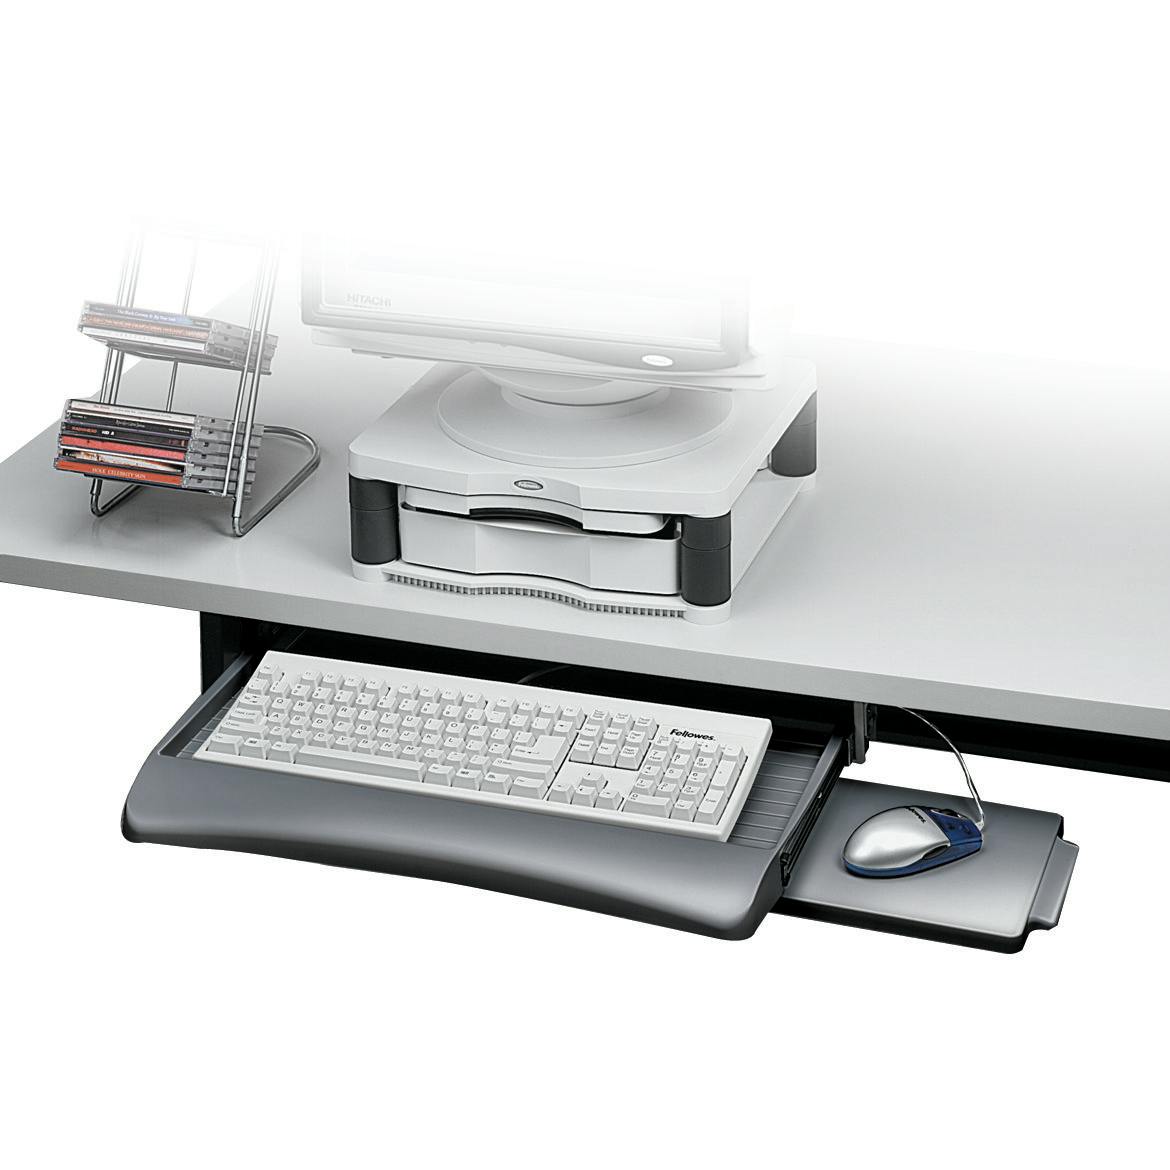 Bandeja para teclado bajo mesa Deluxe Office Suites